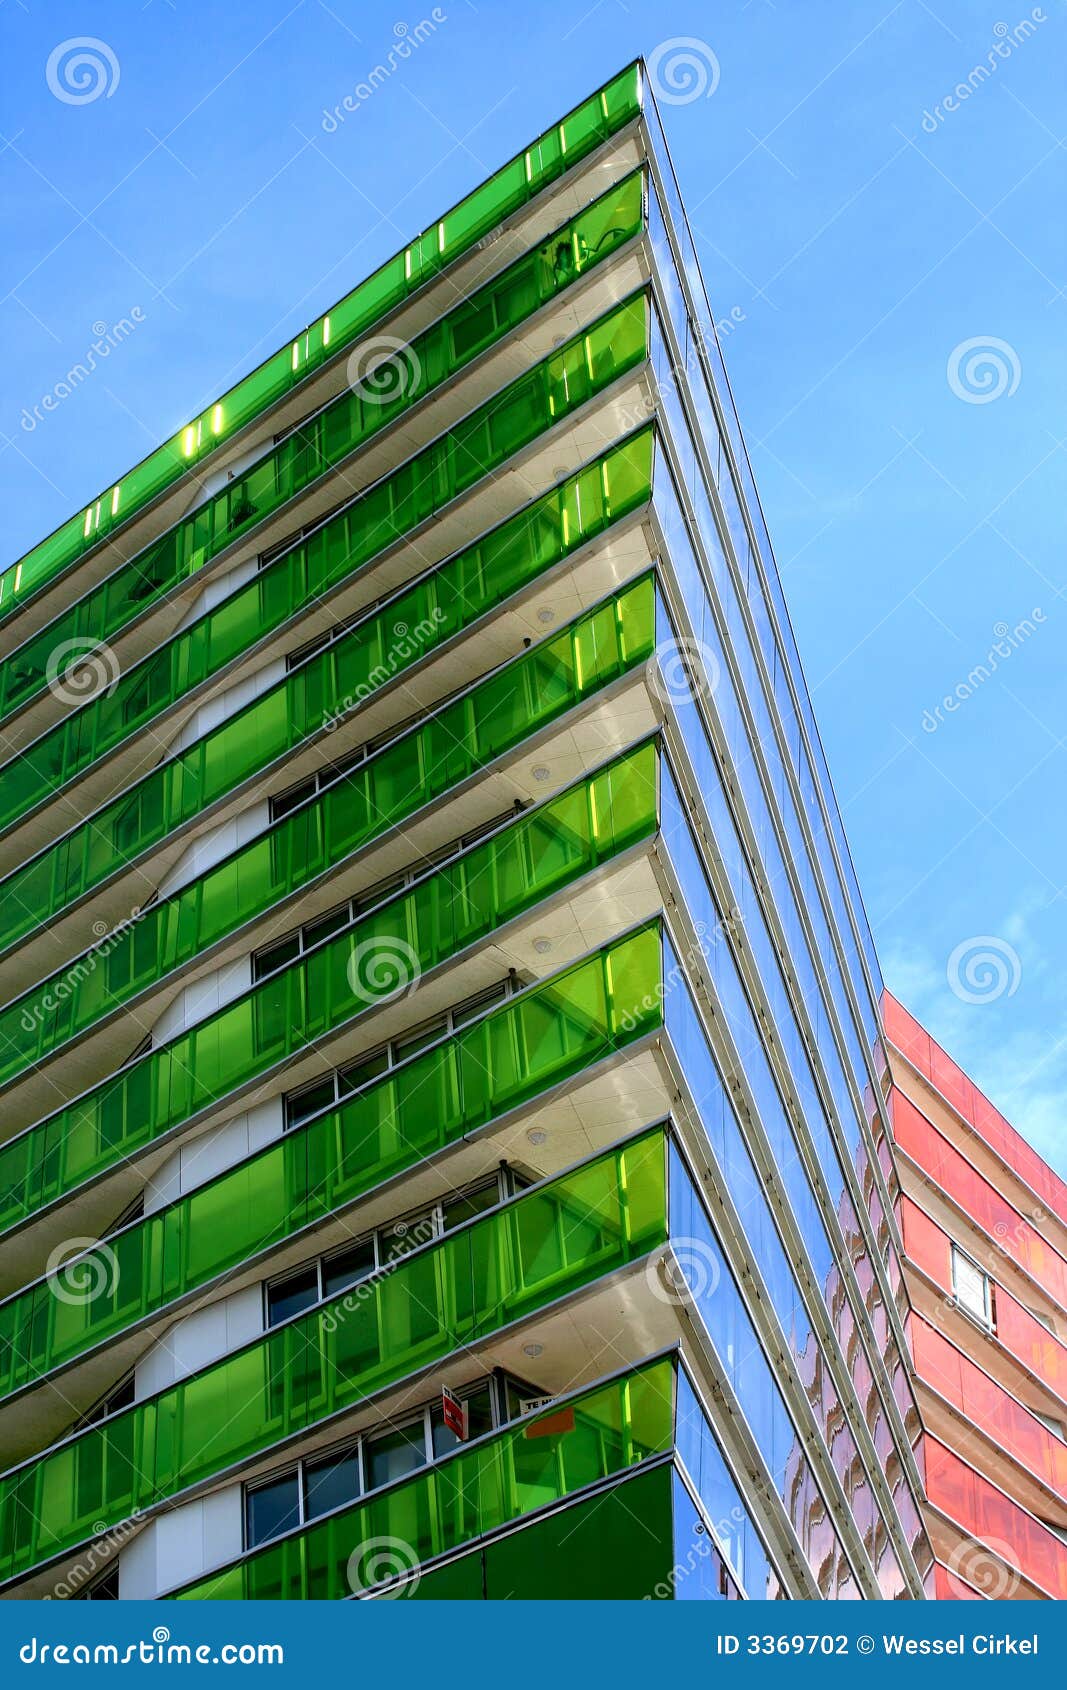 skyscraper with coloured walls